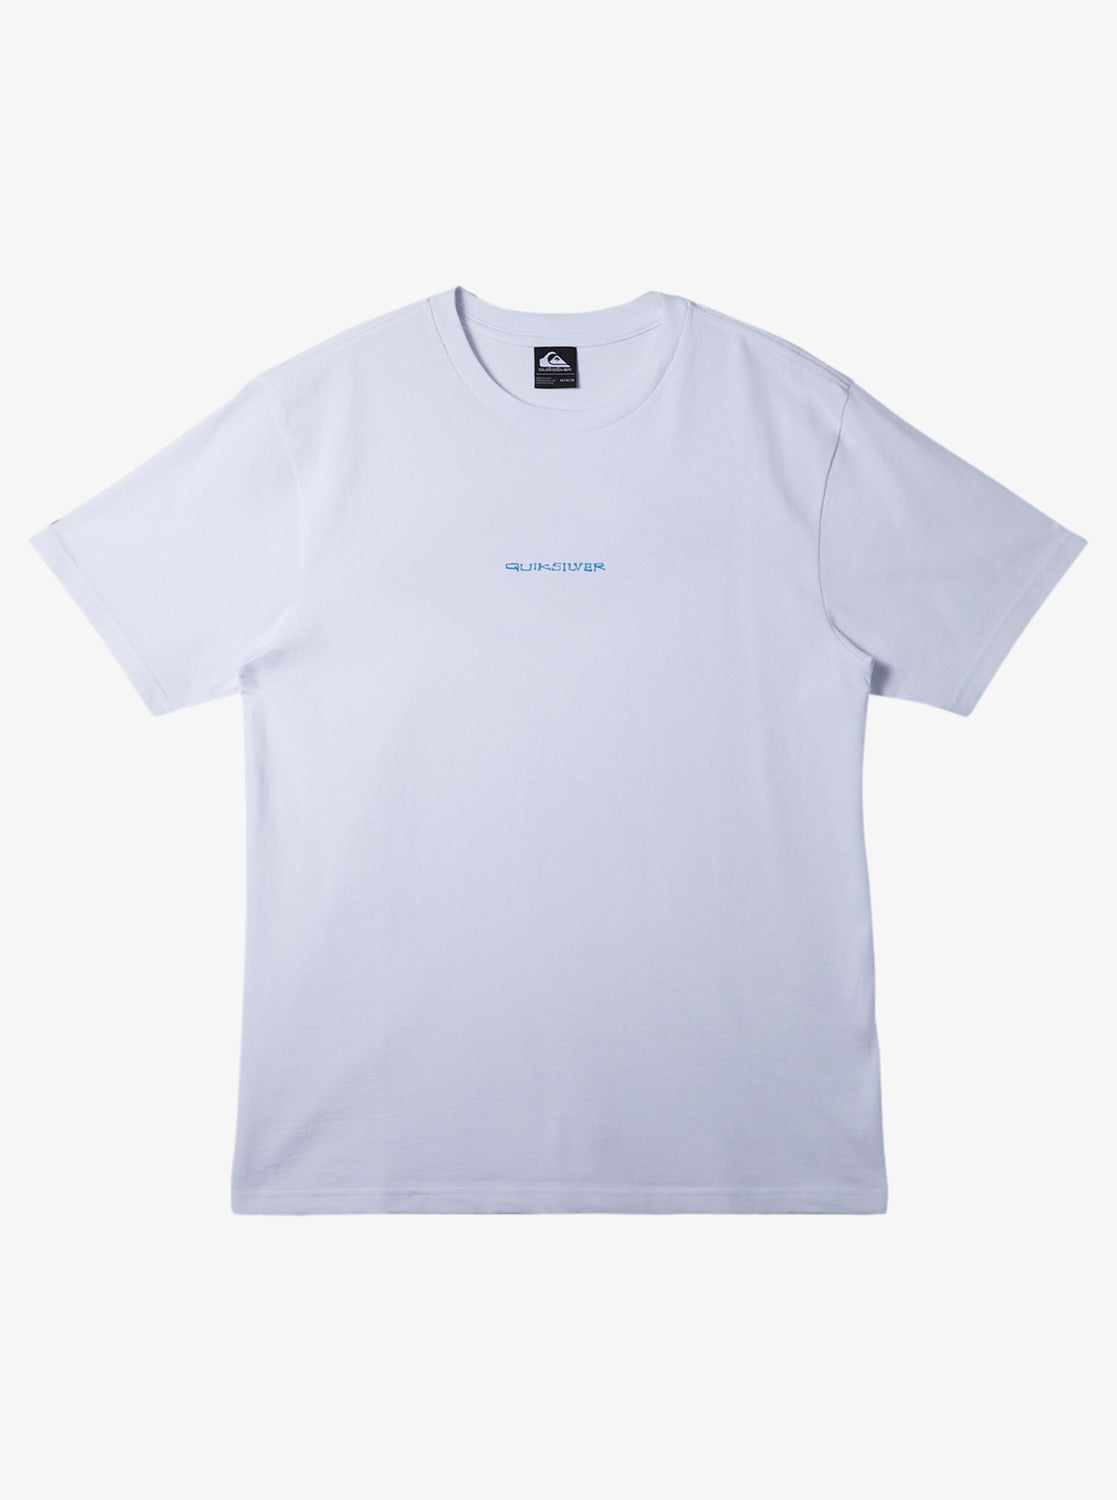 Surf Safari T-Shirt - White